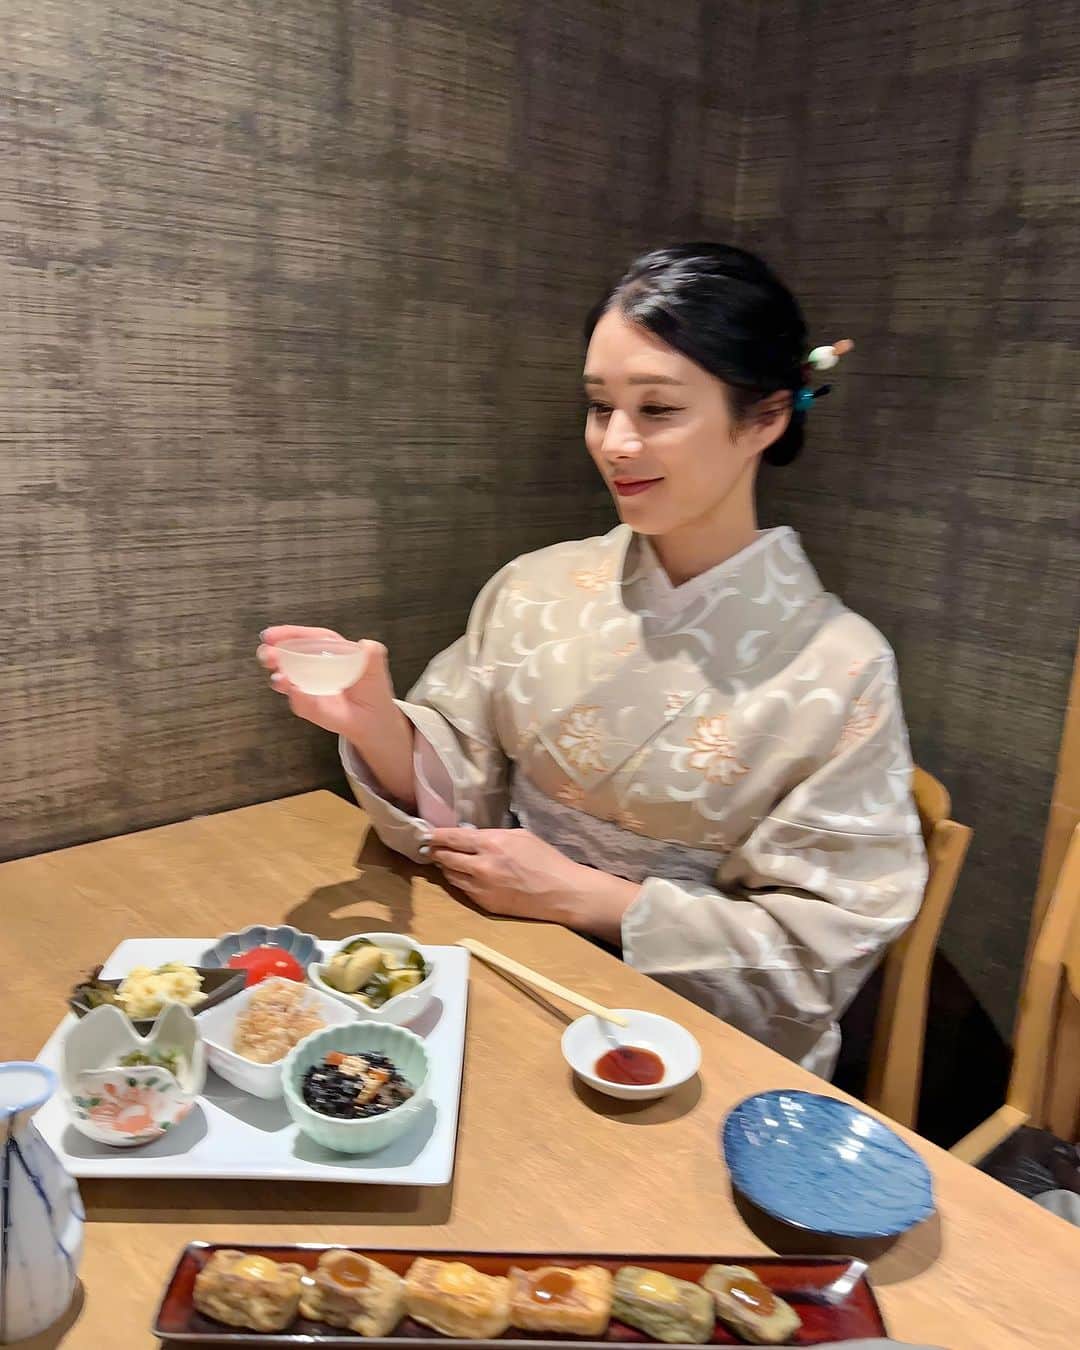 紙本真琴のインスタグラム：「京都と言えば“おばんざい”! 美味しい日本酒と楽しみたくて着物のままで立ち寄ったお店は  日本酒とおばんざいの京酒場 けんすい錦 @kensui_nishiki   生麩田楽とお刺し身盛り合わせ それに楽しみだったおばんざいの盛合わせ6種を堪能  おばんざいは京野菜等を使った食材を炊いていて  海老芋と京湯葉を使ってあんを上からかけて食べると絶品  新鮮なお魚のお刺身ももちもちの生麩も美味しかった〜🤍  このお店で“まぐろ”を指さして“ヨコワ”と呼んでて 京都では鮪をそう呼ぶのかと思って、まゆみんとくーちゃんに聞いたら  クロマグロの若い頃を“よこわ”と呼ぶんだって！ これは関東でも同じなのかな？  それにしても美味しいおばんざいが頂けて楽しい夜だったな  #PR @kensui_nishiki #けんすい錦 #おばんざい #京都グルメ #四条グルメ #京都居酒屋 #四条烏丸グルメ #四条烏丸ディナー #京都好き #京都ディナー #お酒好き #夫婦旅行 #着物でデート #スタイルアップコーディネーター #macotokamimoto」